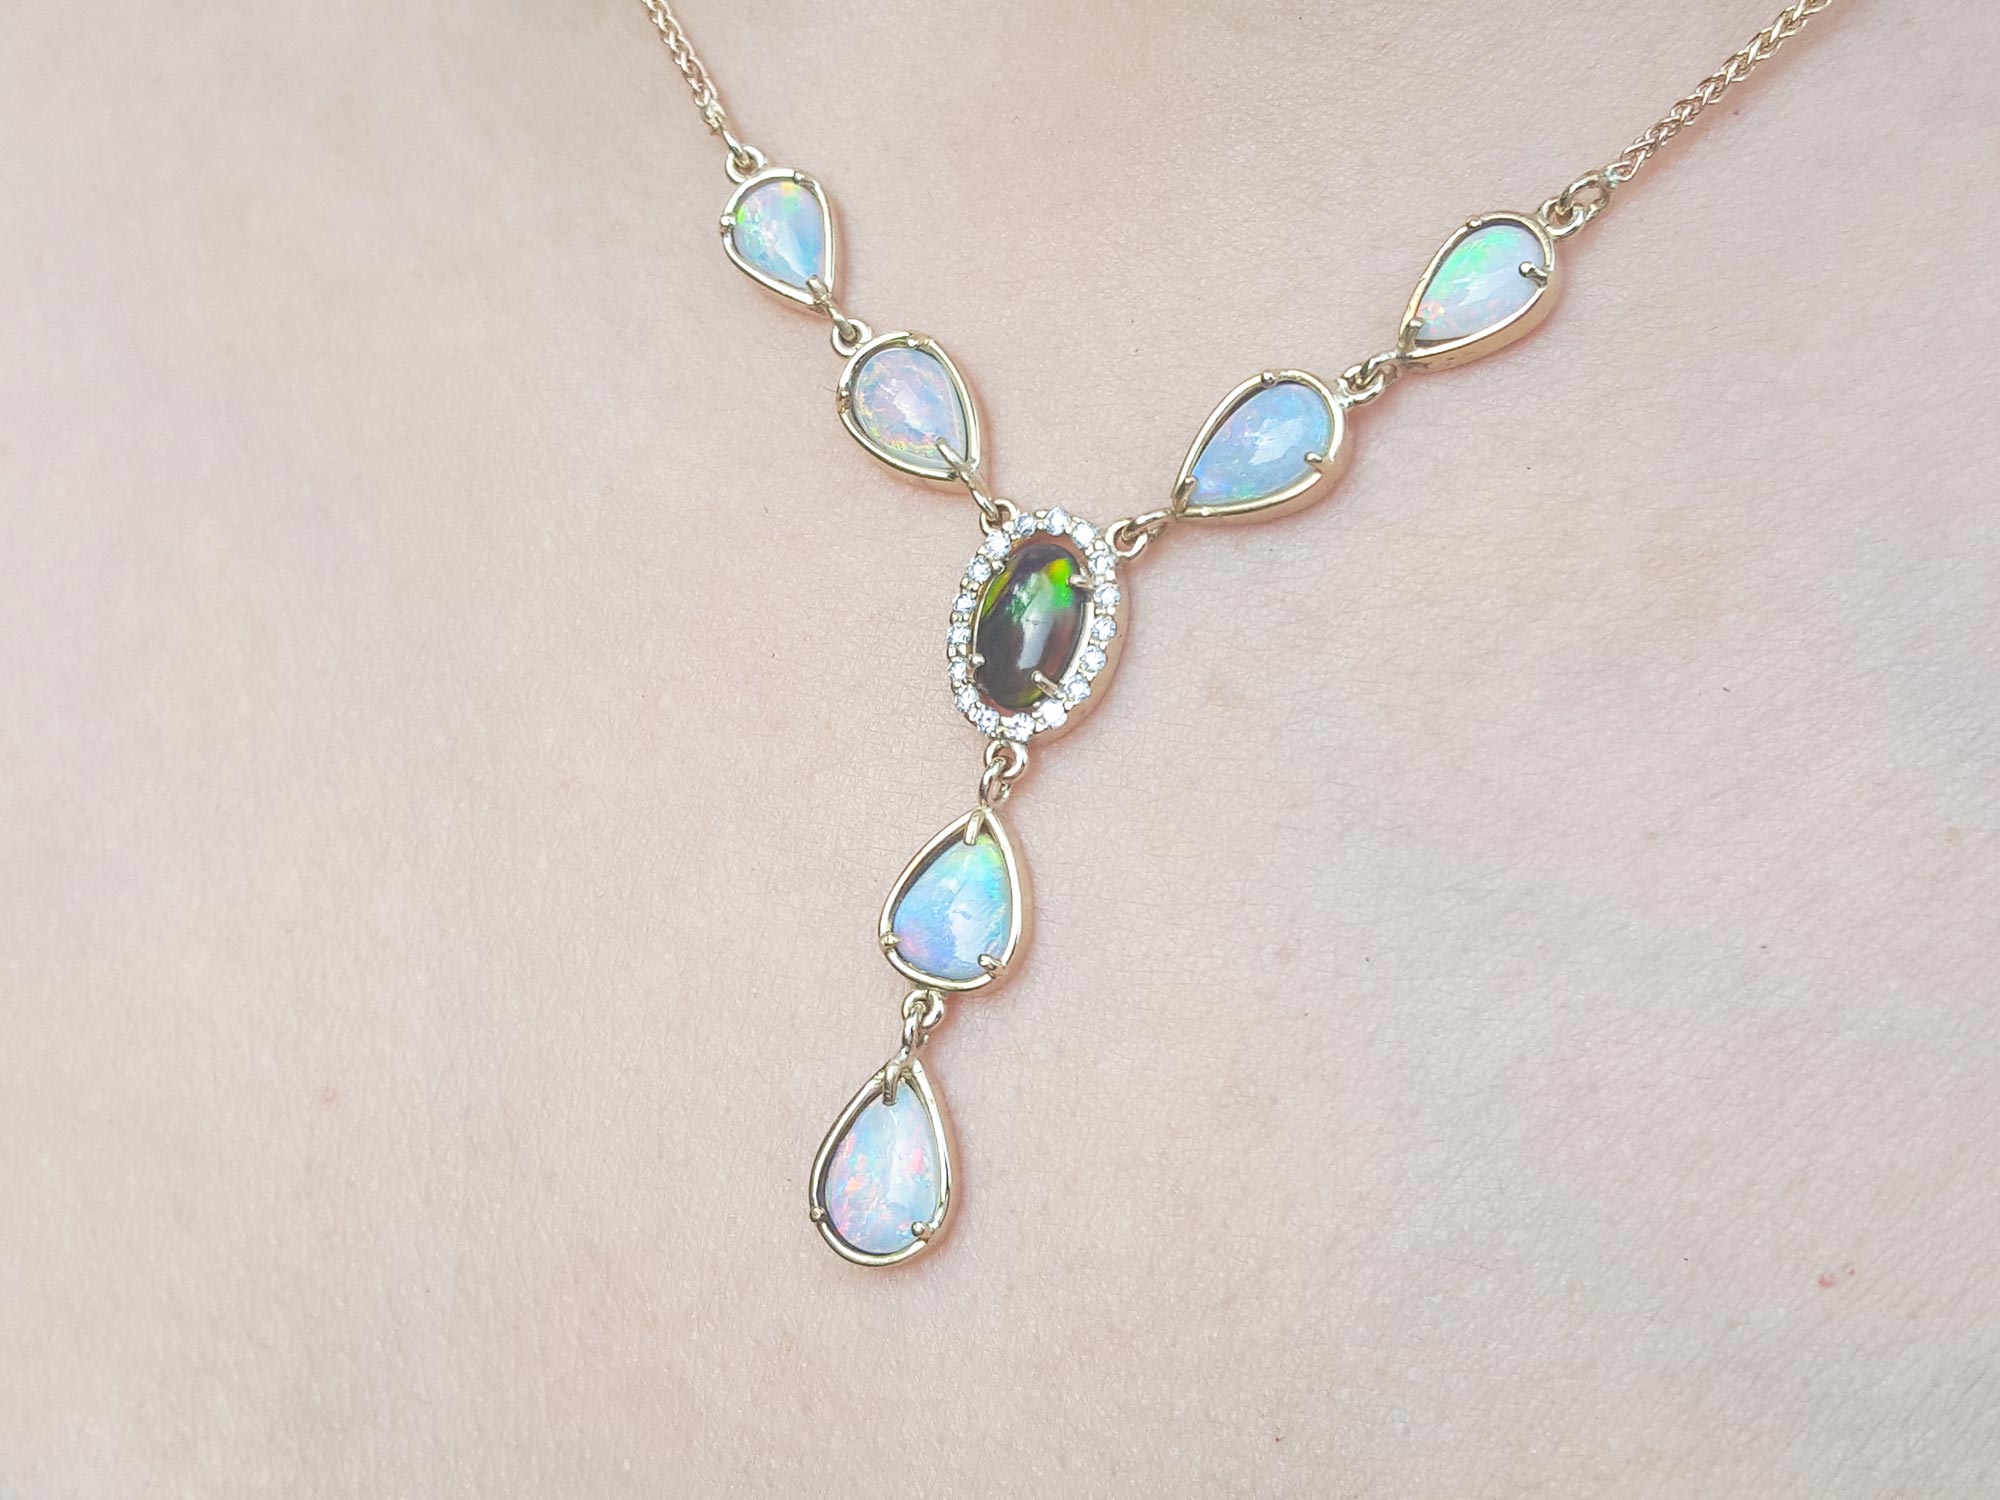 Opal Australian necklace